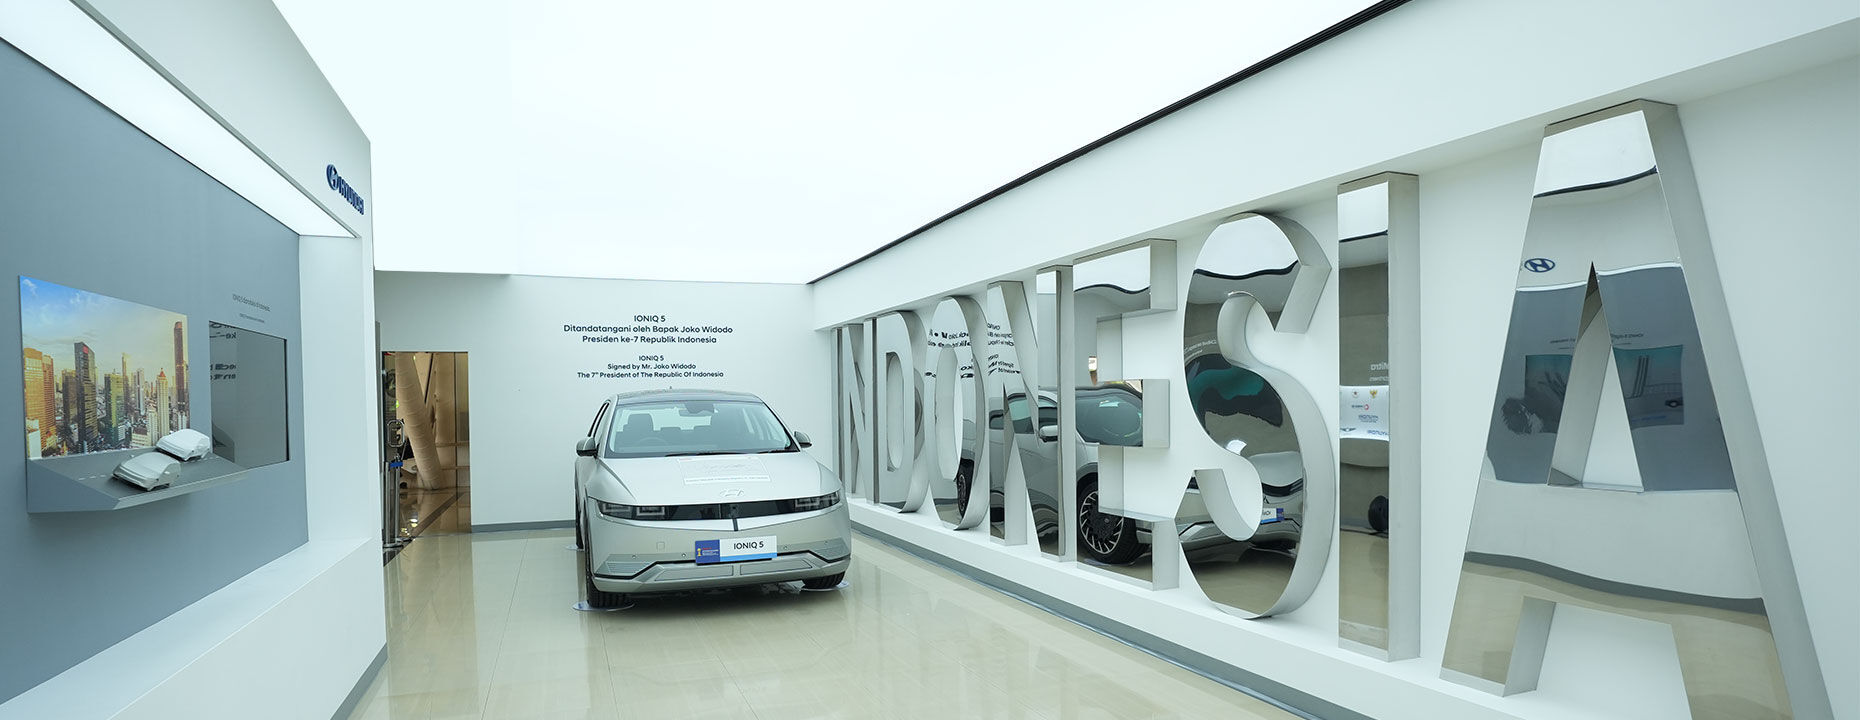 Hyundai Mobility Exhibition Centre